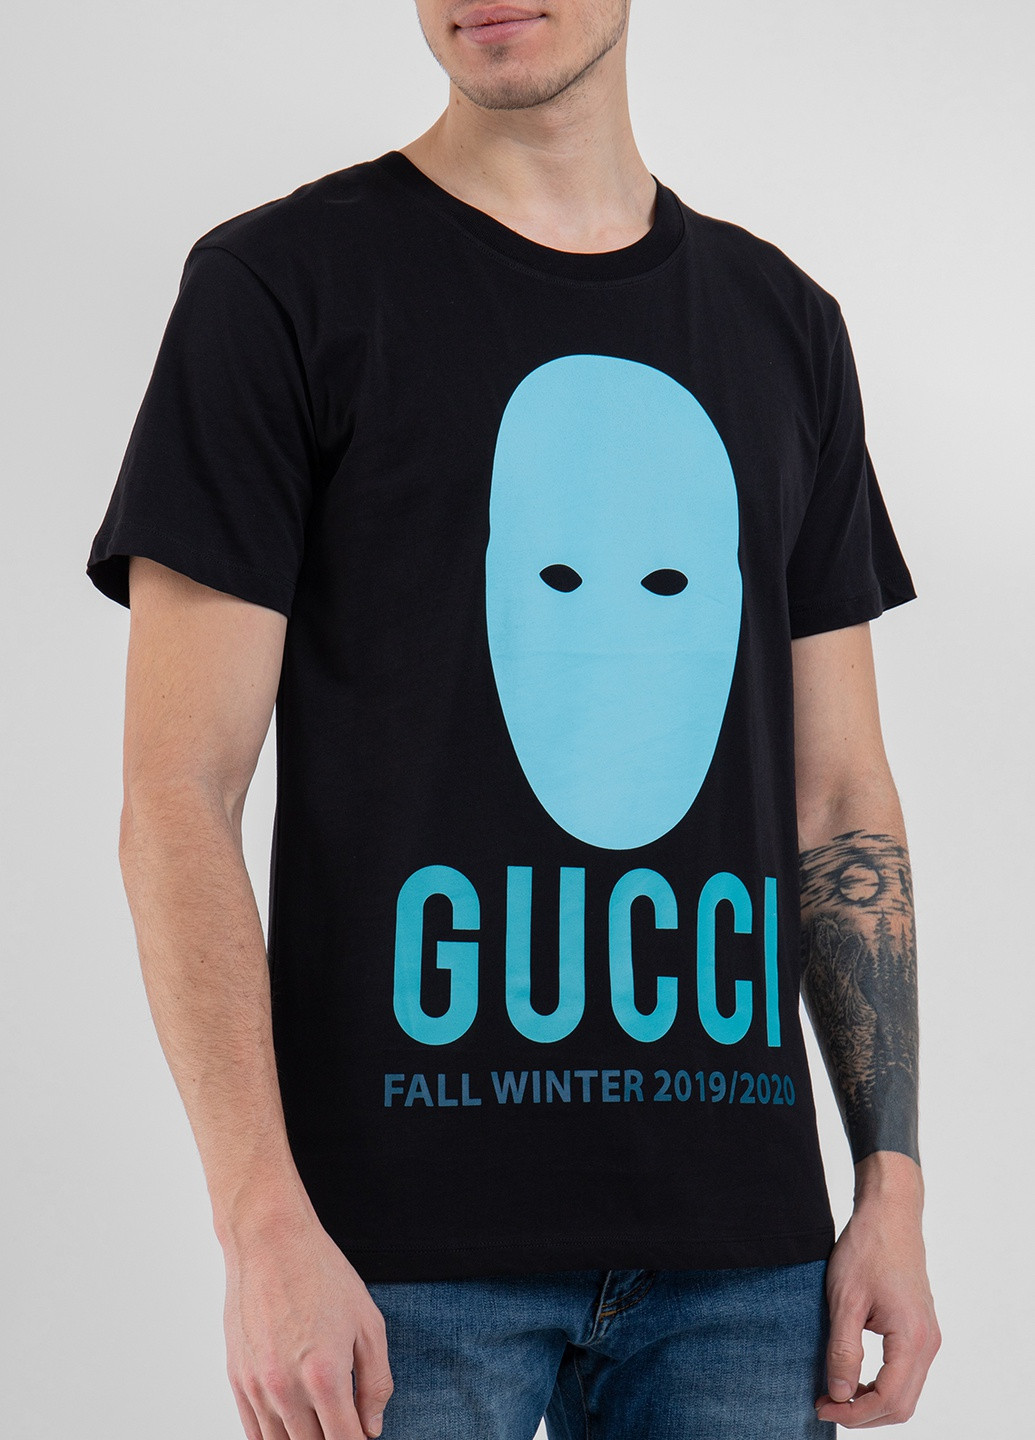 Черная бежевая футболка с логотипом Gucci